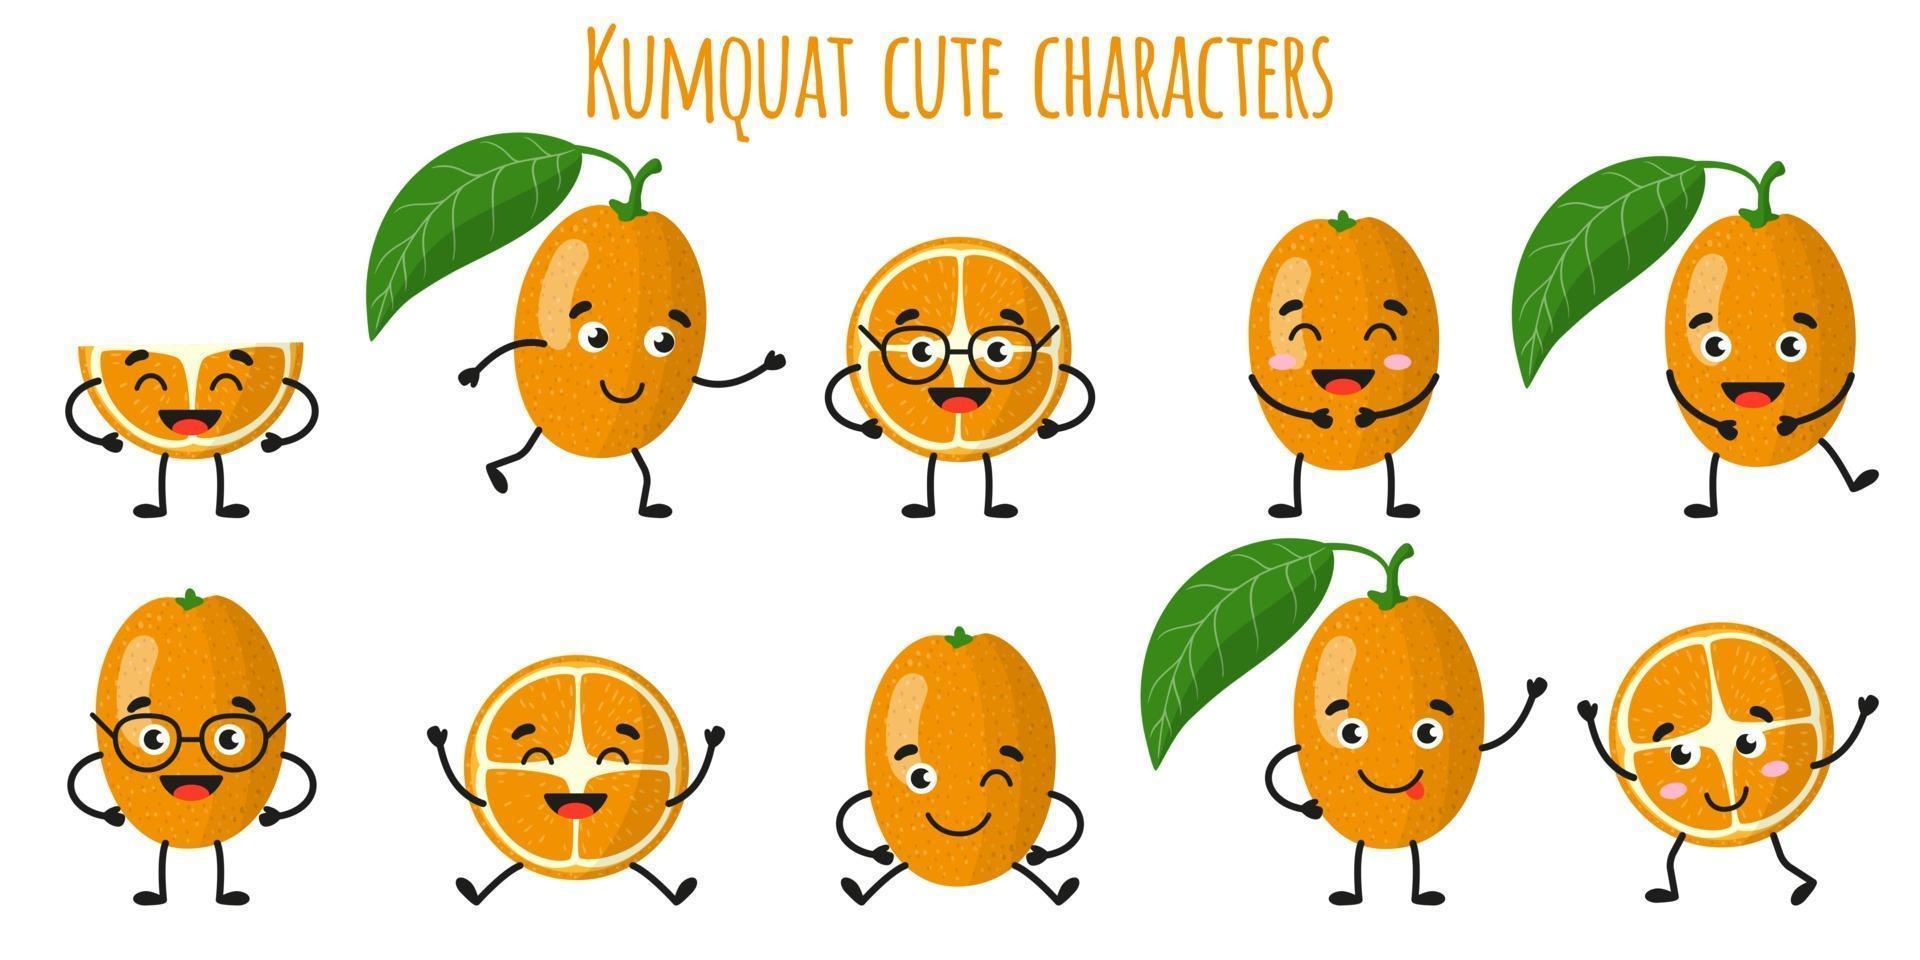 kumquat cítricos lindos personajes alegres divertidos con diferentes poses y emociones. vector